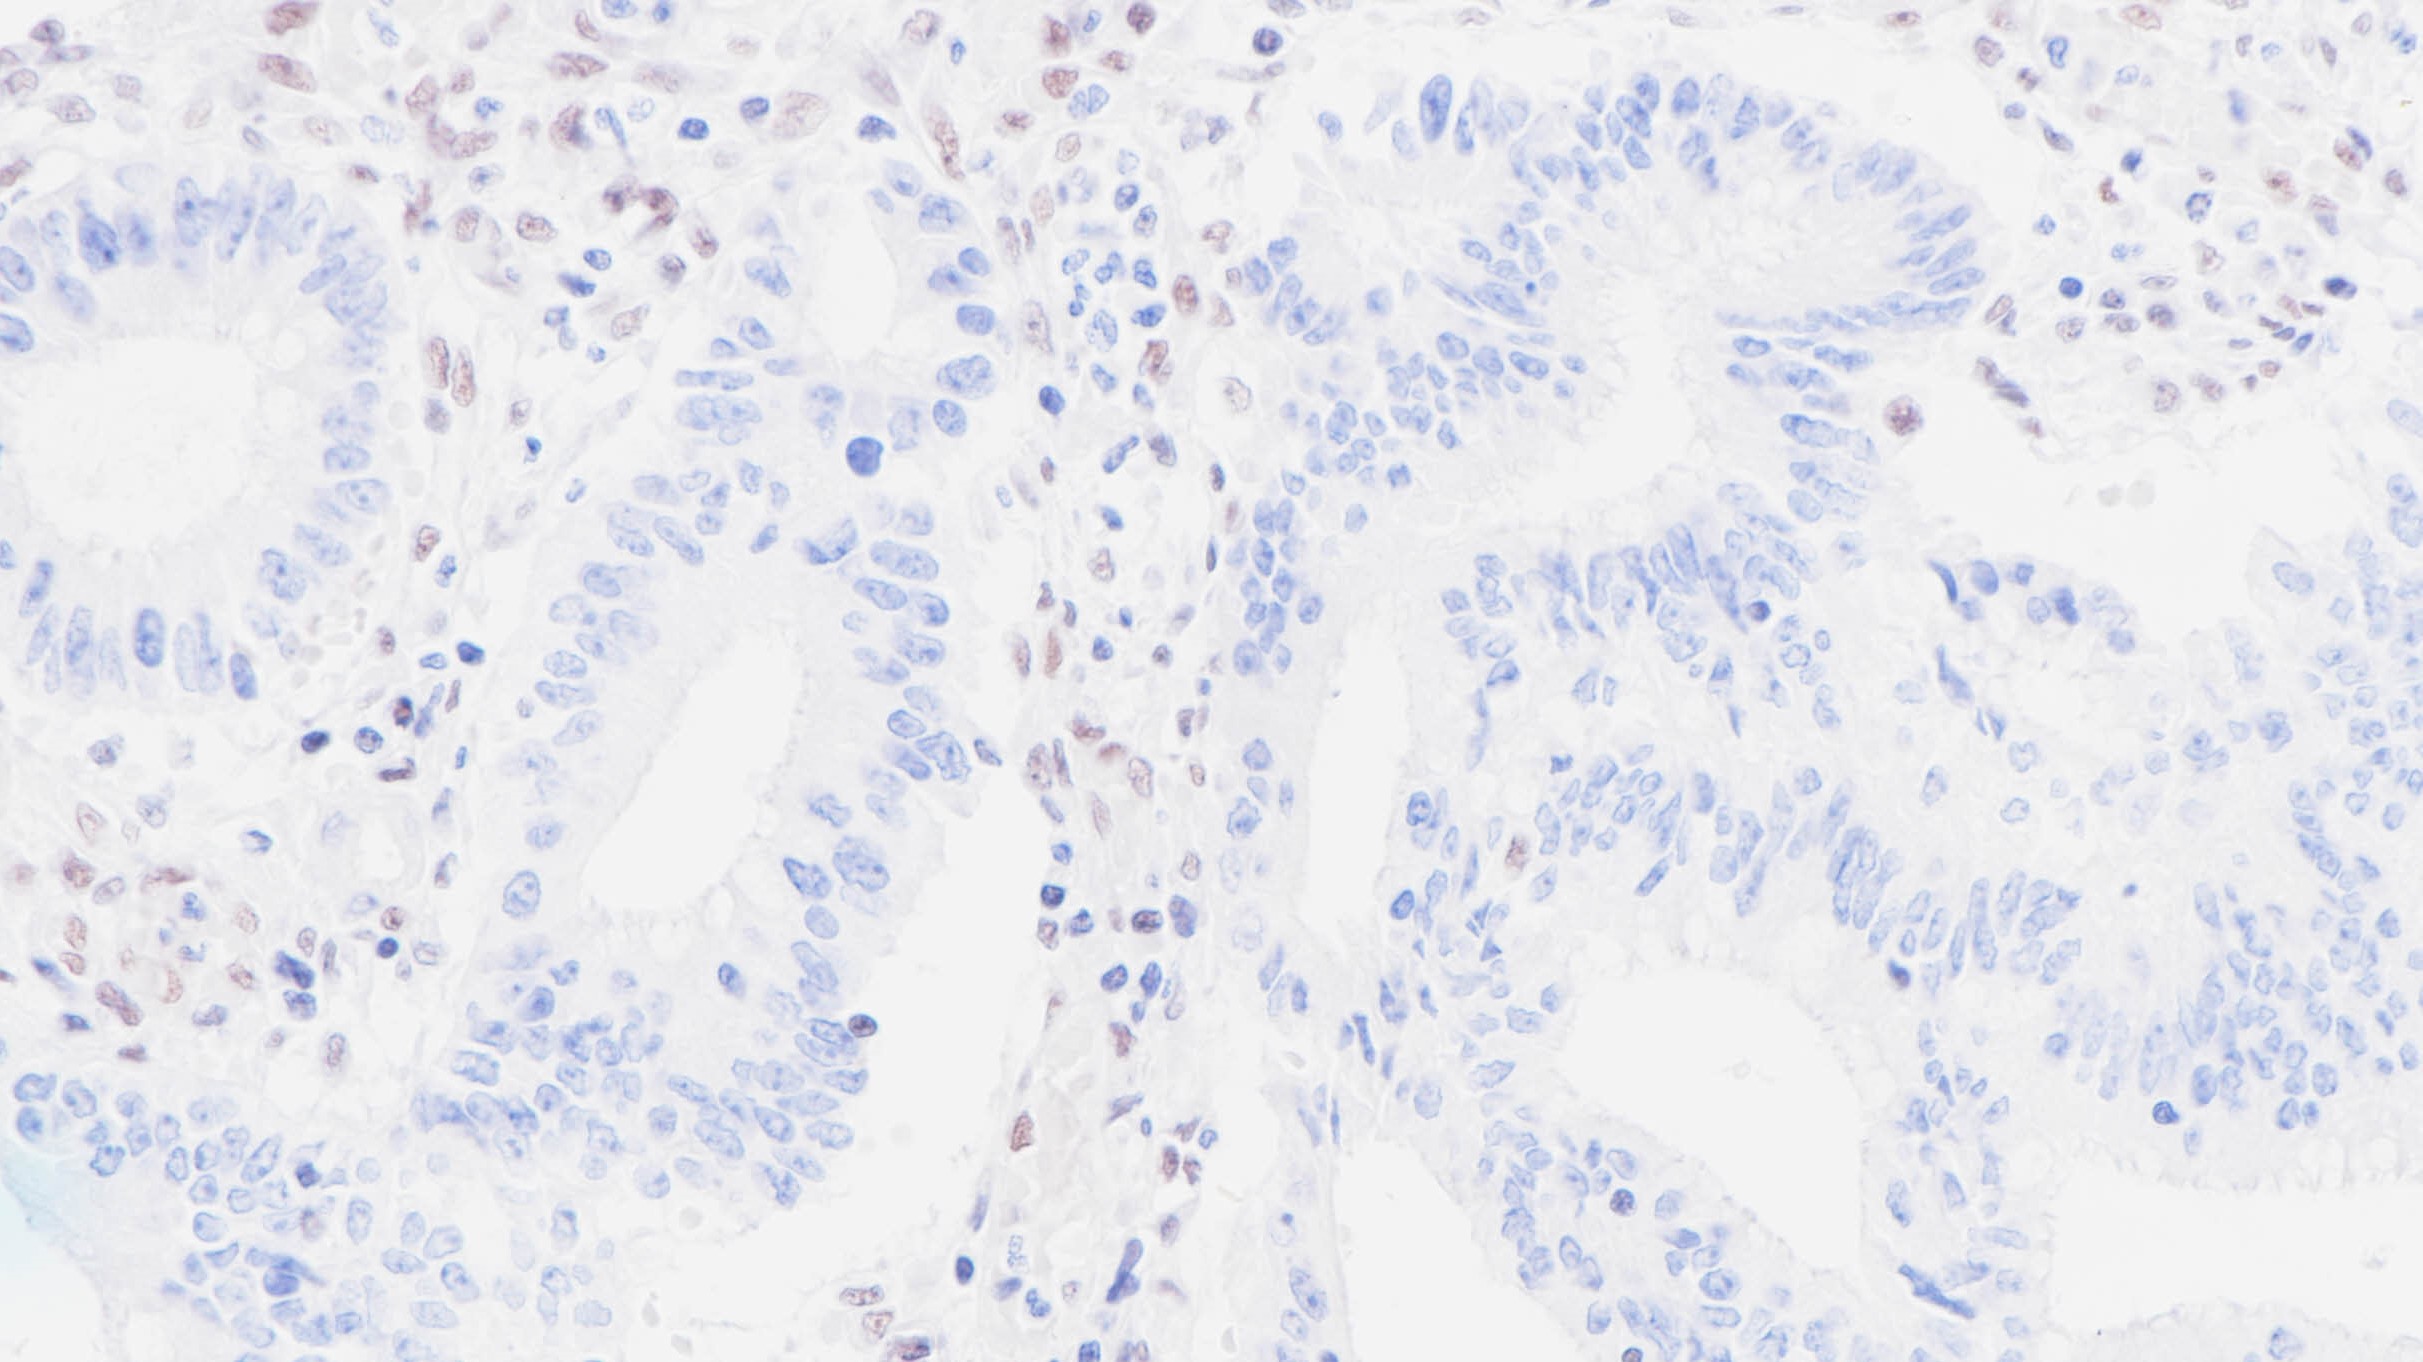 MLH1缺失表达的结肠癌(BPM6179)染色